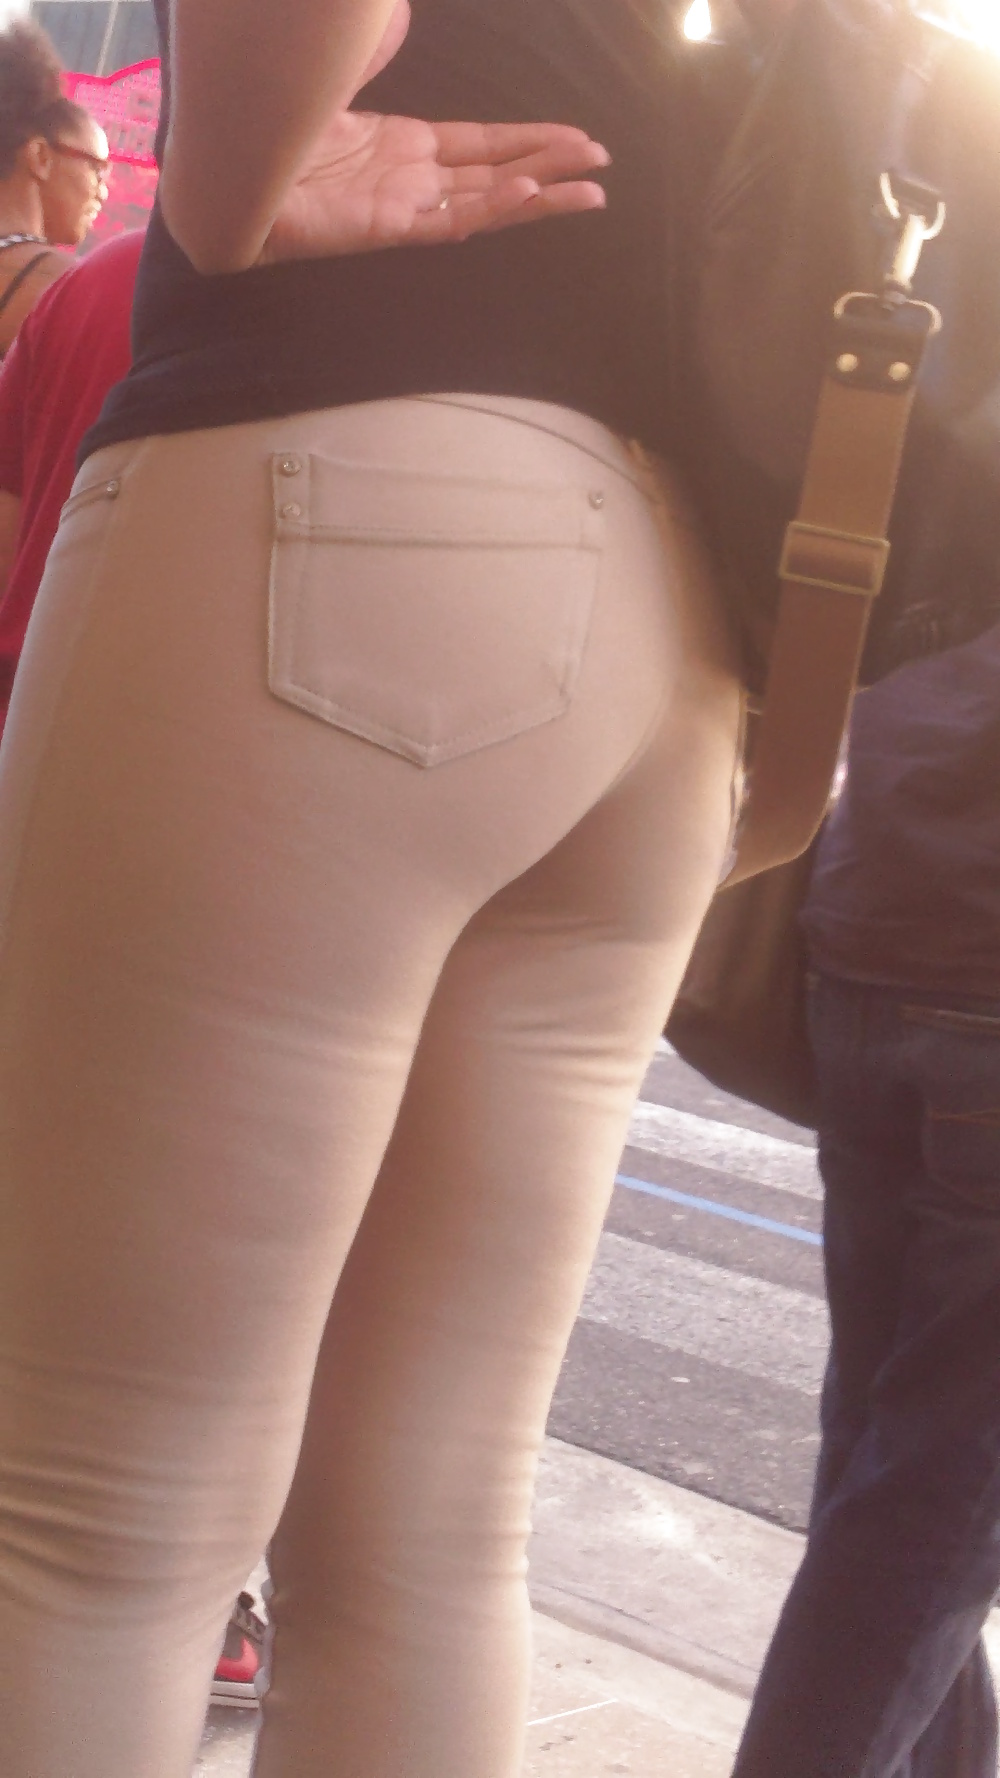 Popular teen girls ass & butt in jeans Part 6 #32009832